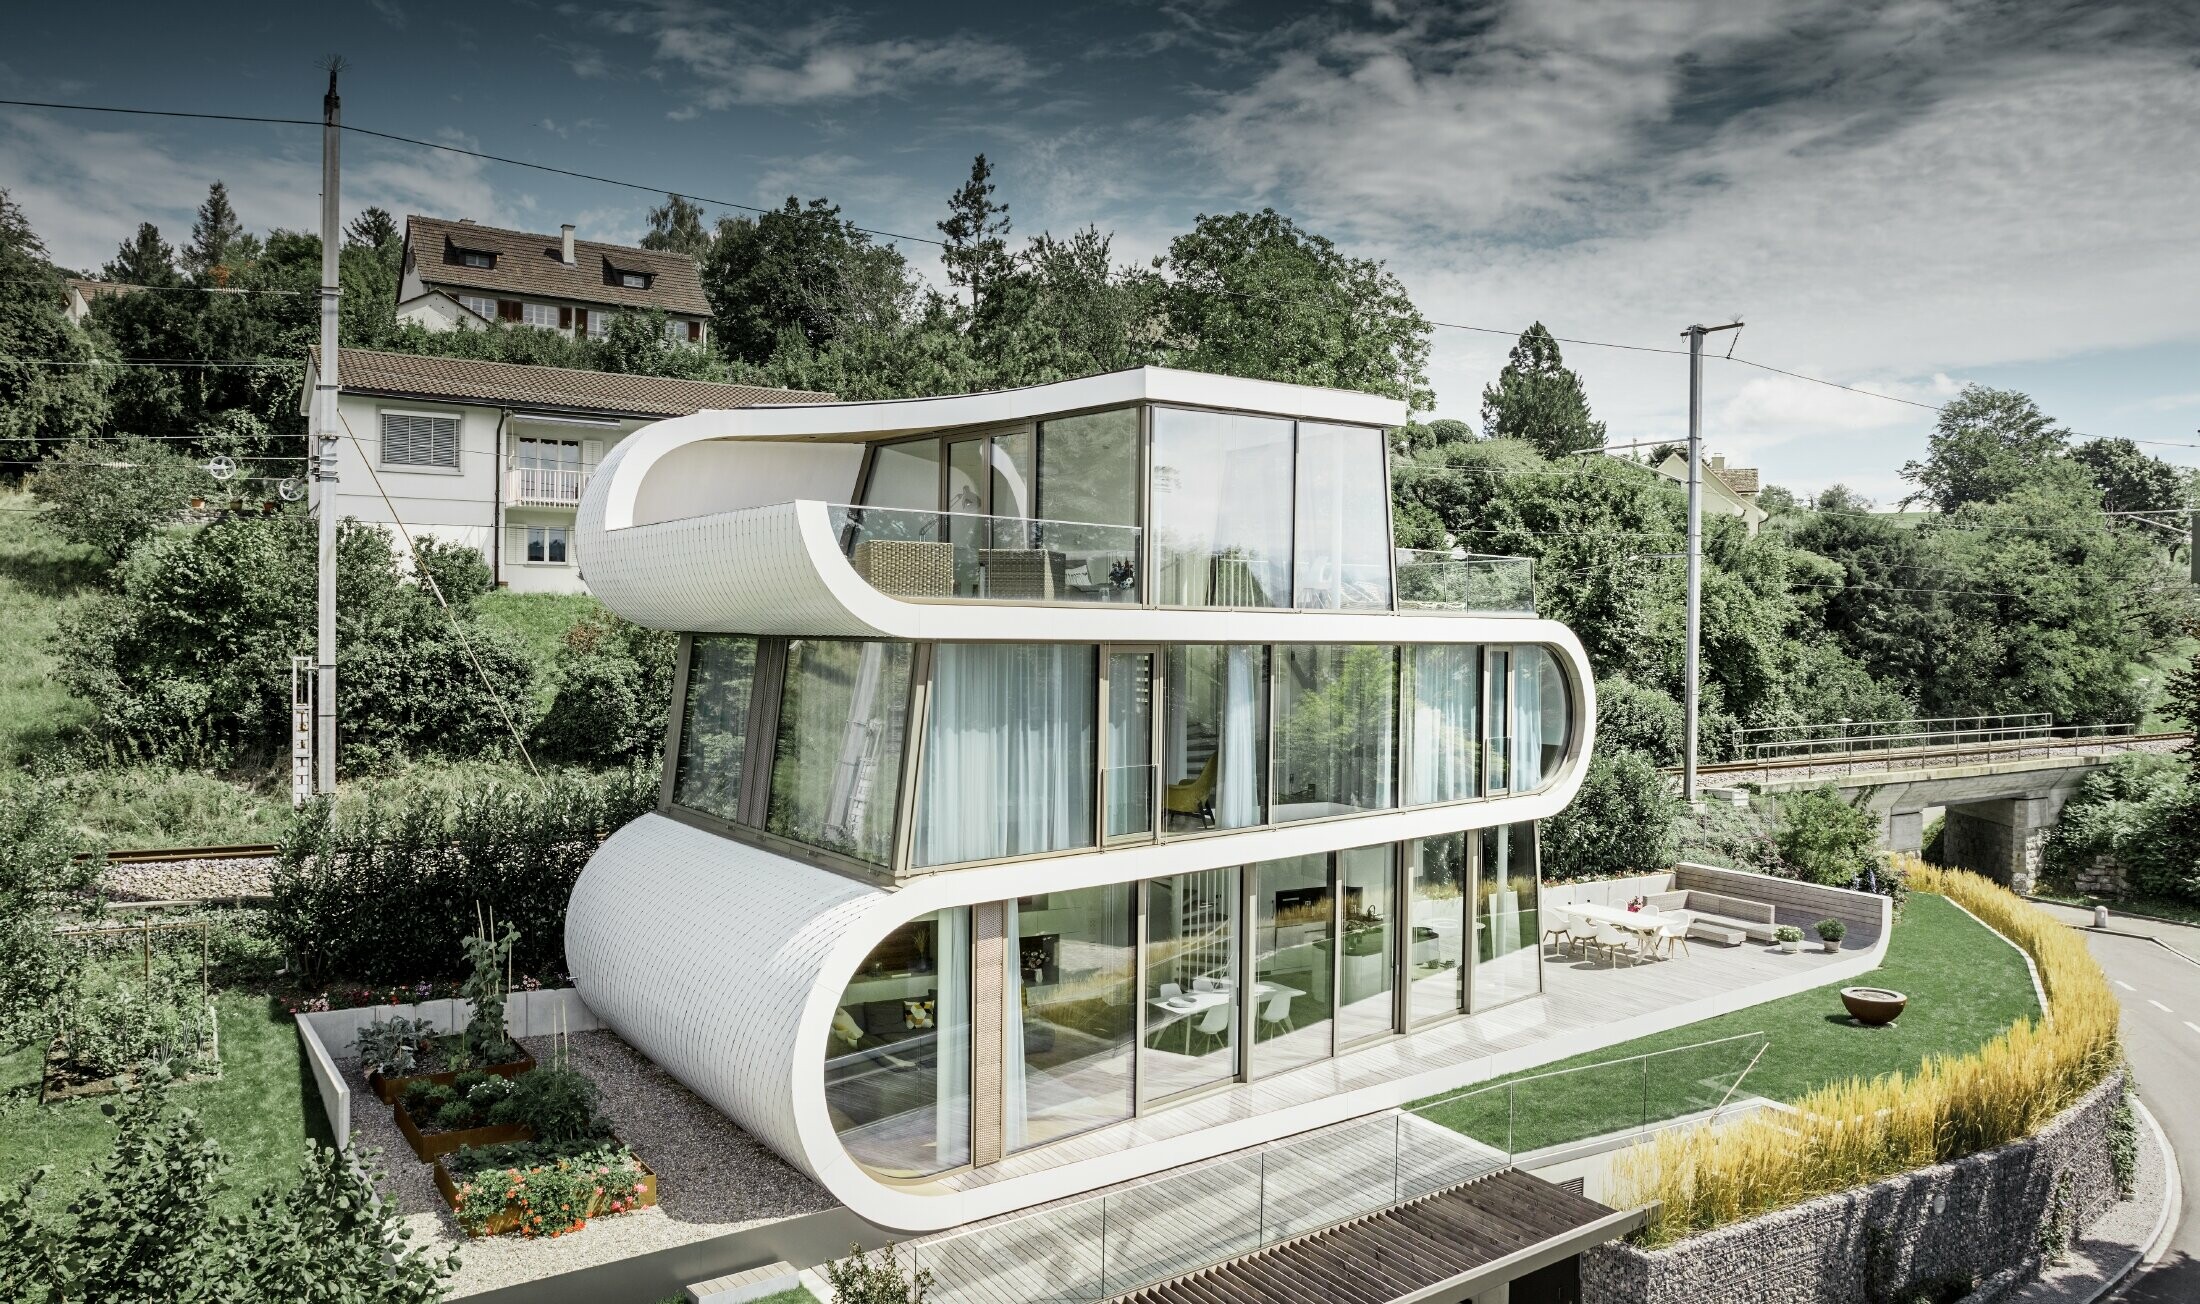 Mycket modernt familjhem designat av arkitekten Camenzind från Zürich. Ett böljande band förbinder de individuella våningarna. Kurvorna kläddes i renvitt med små takplattor från PREFA. Huset har många och stora glaspartier, vilket får hela huset att verka mycket öppet. 